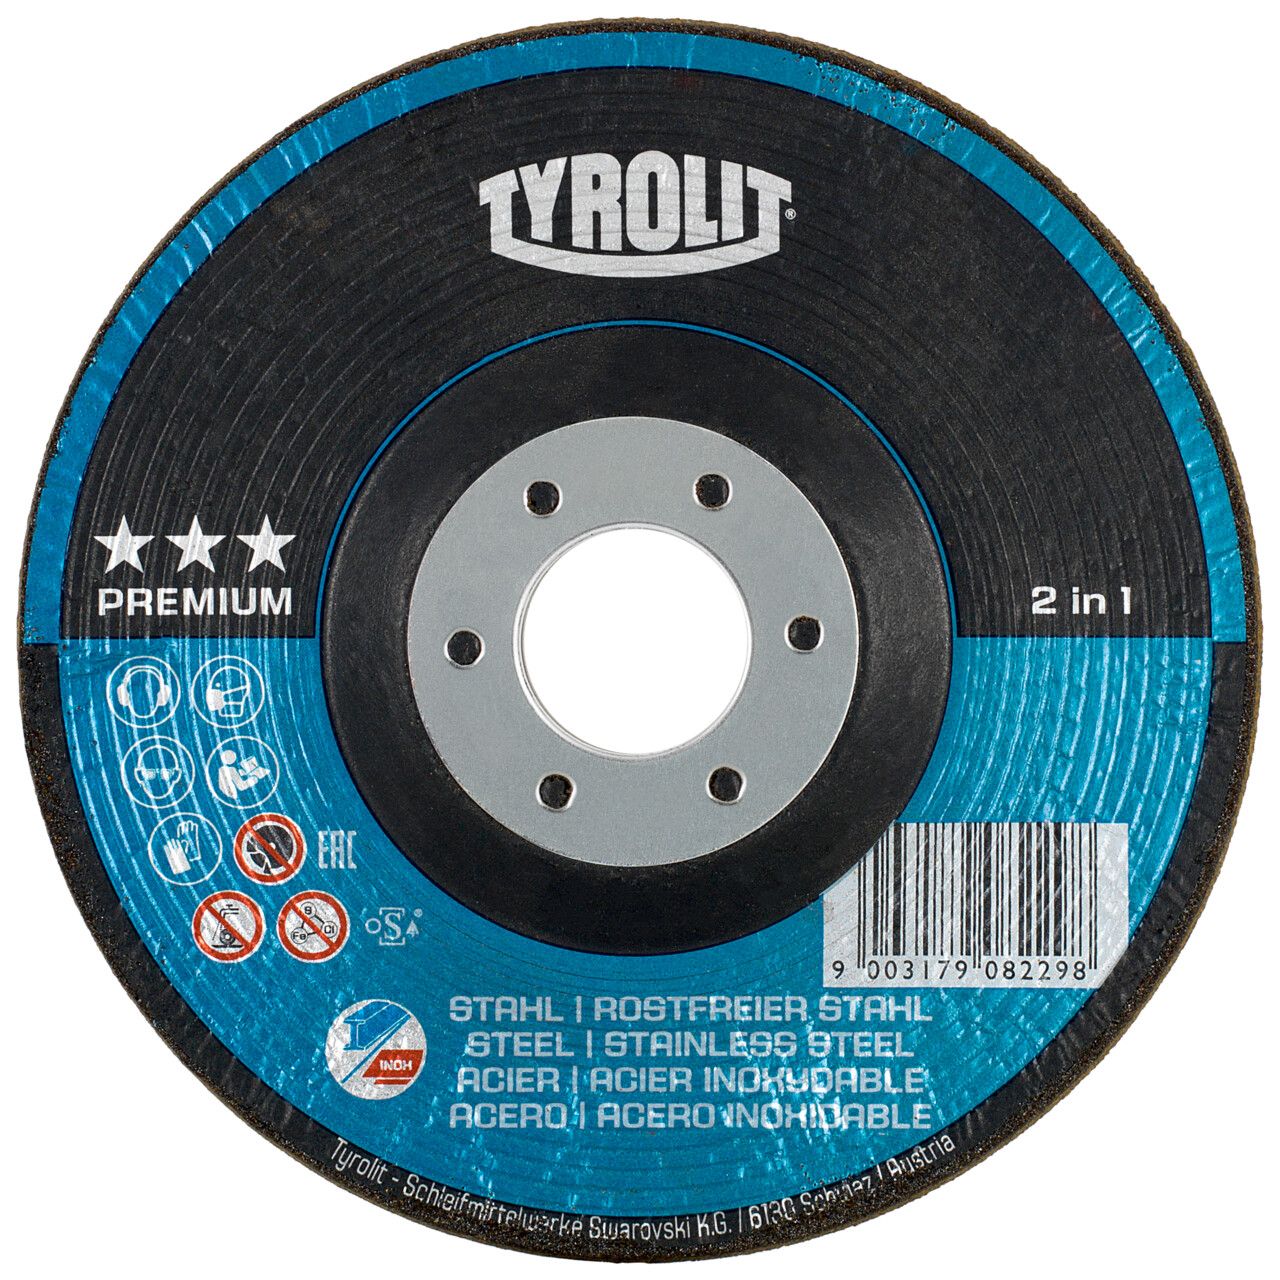 Tyrolit 2in1 RONDELLER® para acero y acero inoxidable 115 #29RON 115x22,23 A36Q-BF